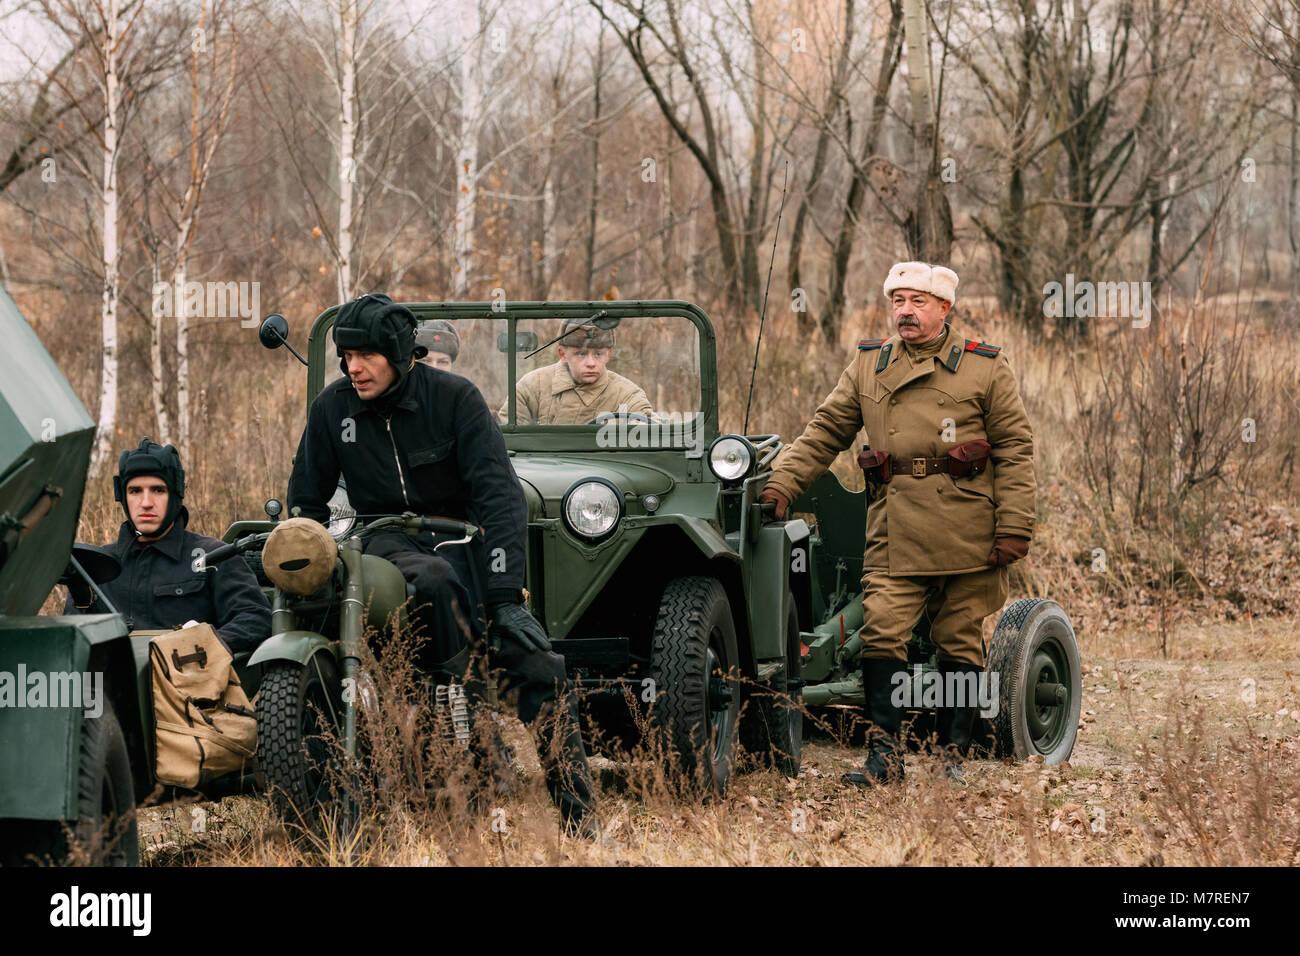 Gomel, Belarus - November 26, 2016: Soldaten und Sergeant Major am Auto. Wiederaufbau der Roten Armee bei der Befreiung der Stadt Gomel Stockfoto